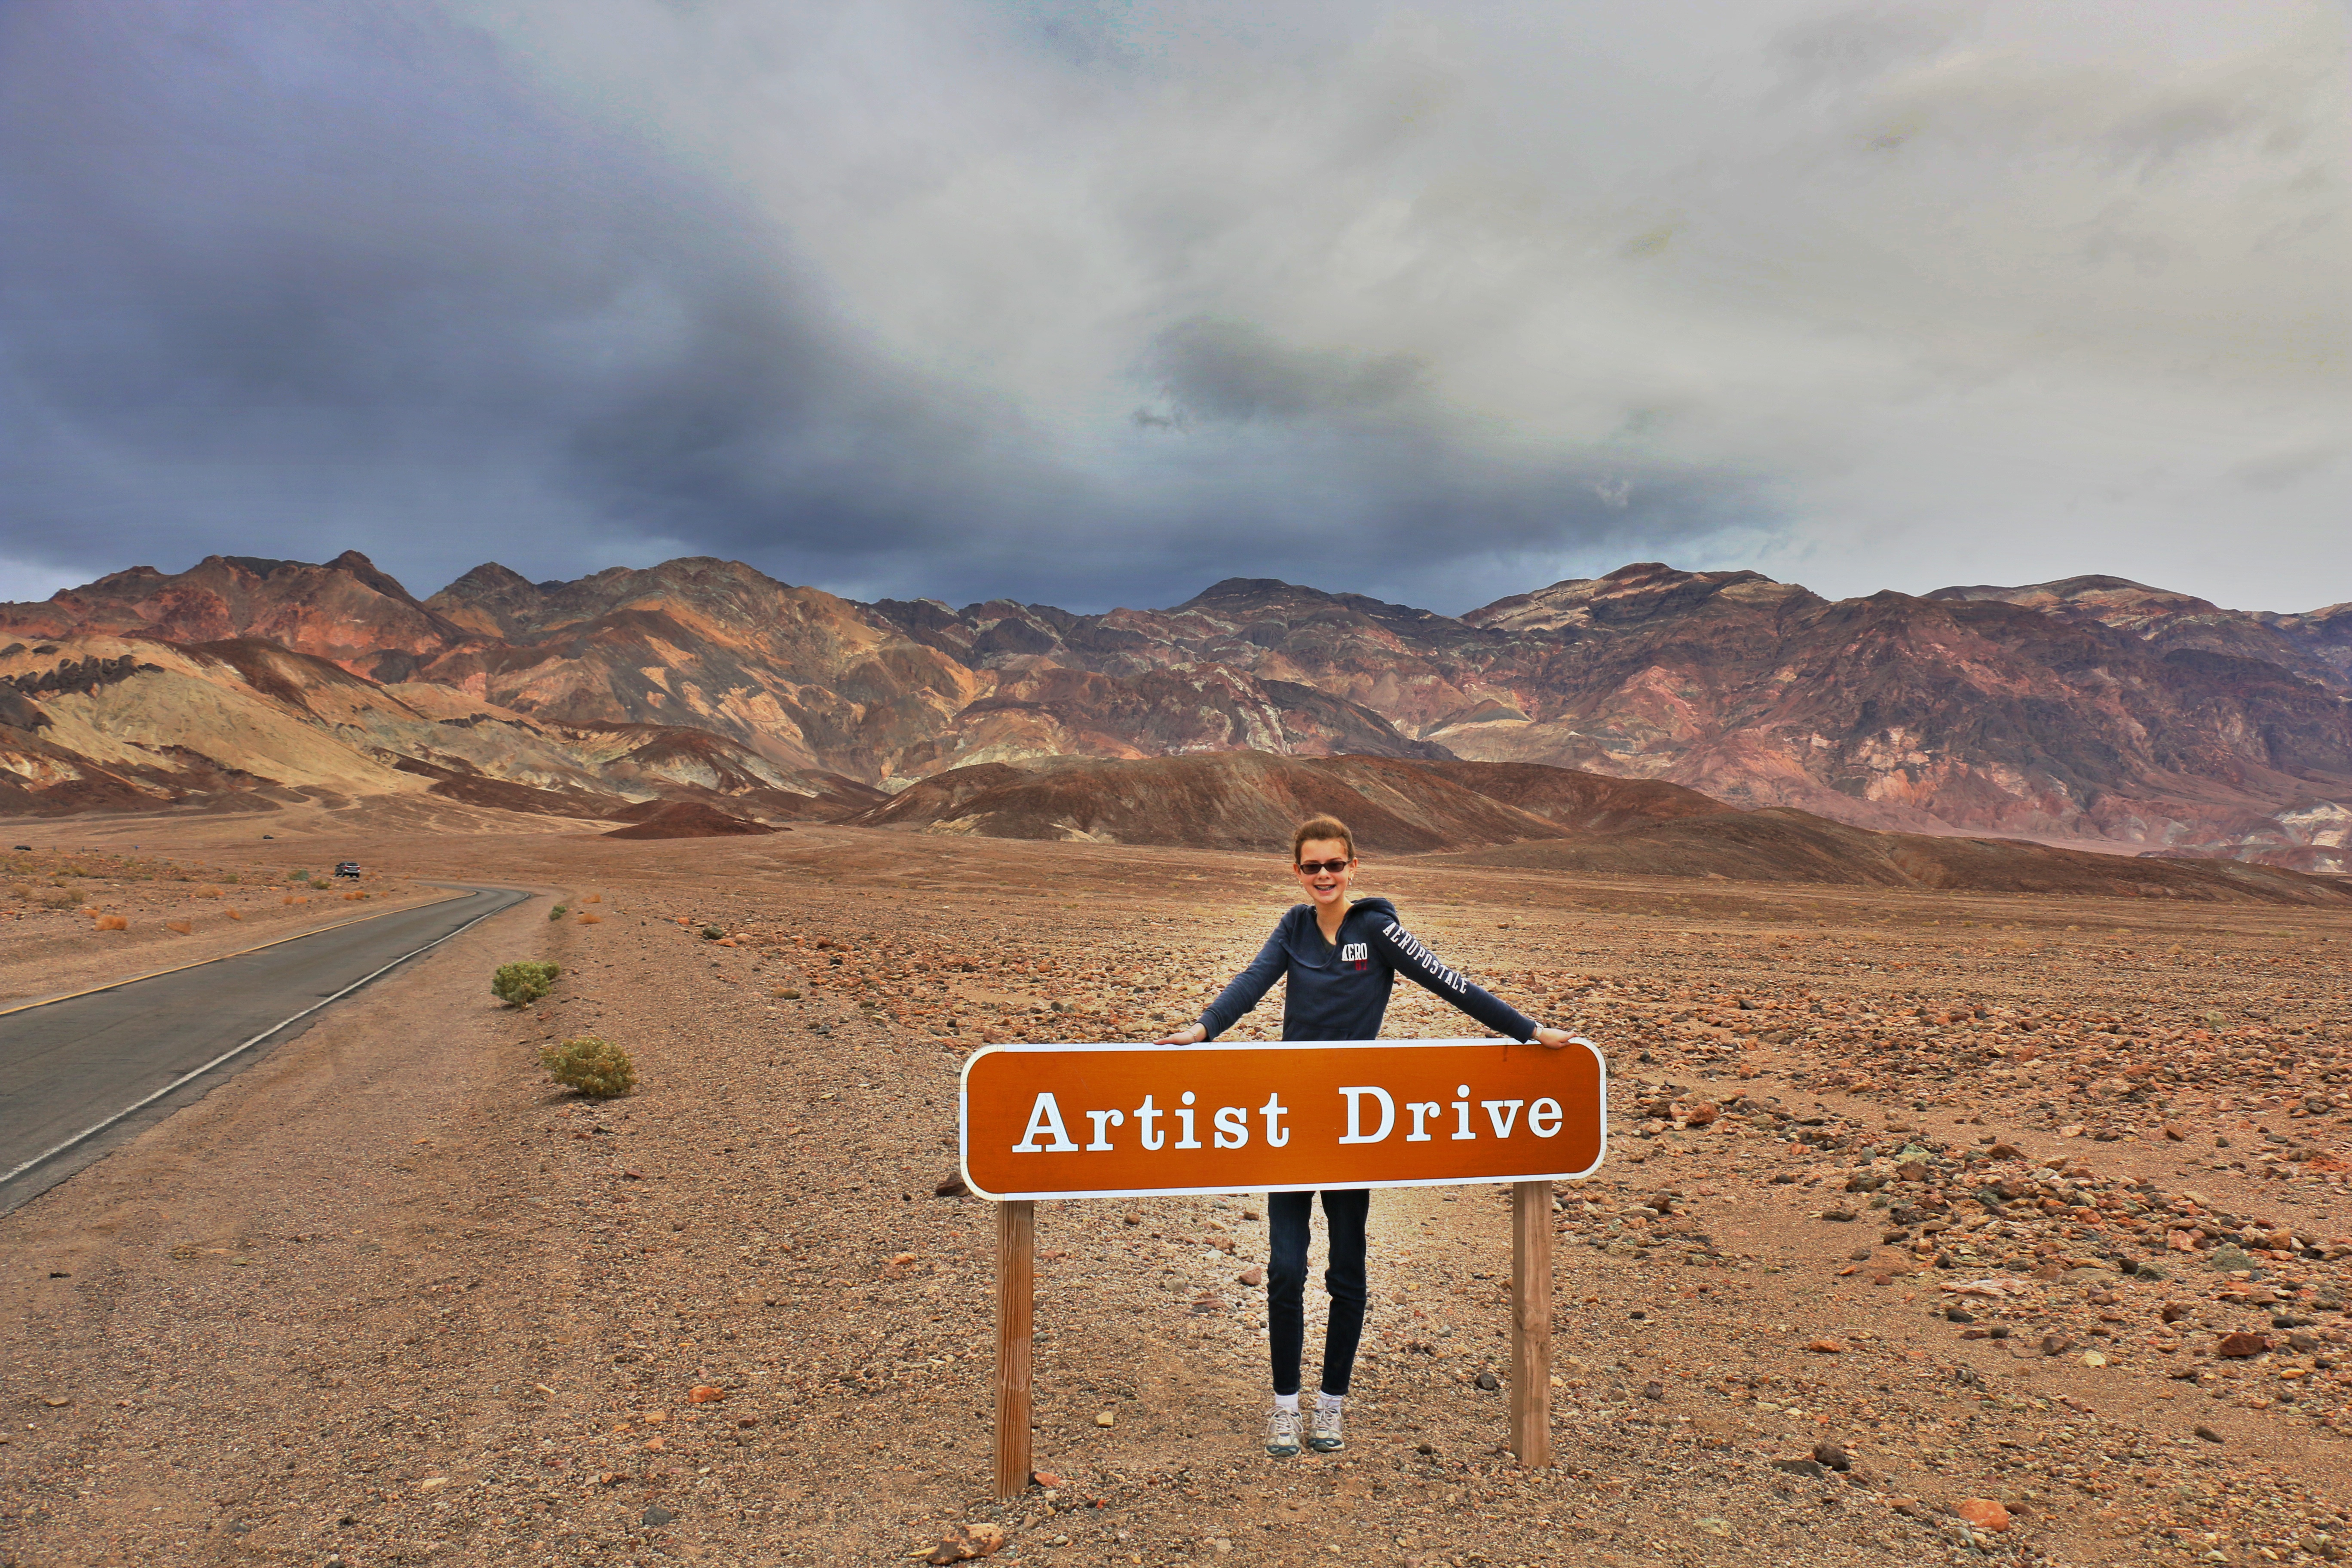 Day 10 – Artist Drive (Death Valley)